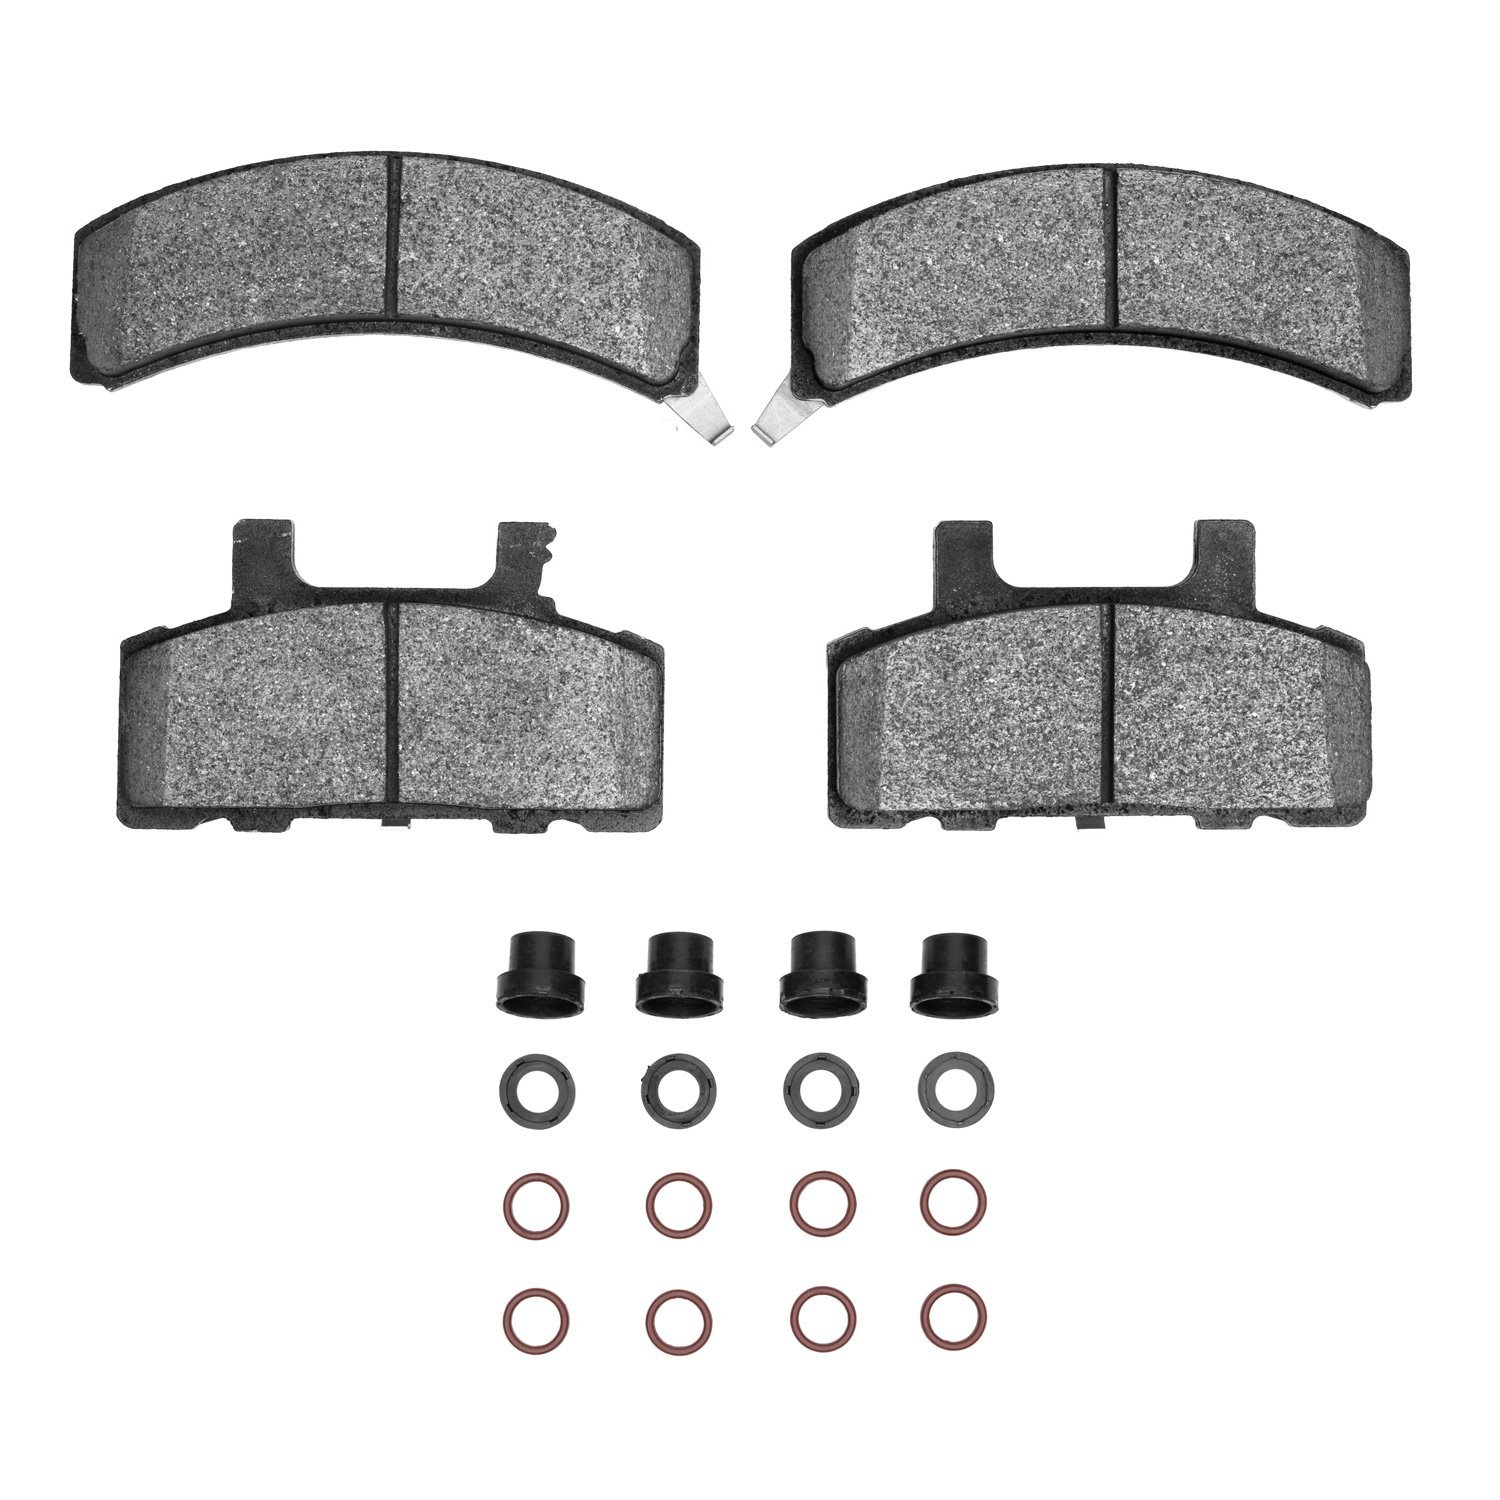 1311-0368-01 3000-Series Semi-Metallic Brake Pads & Hardware Kit, 1988-1991 GM, Position: Front